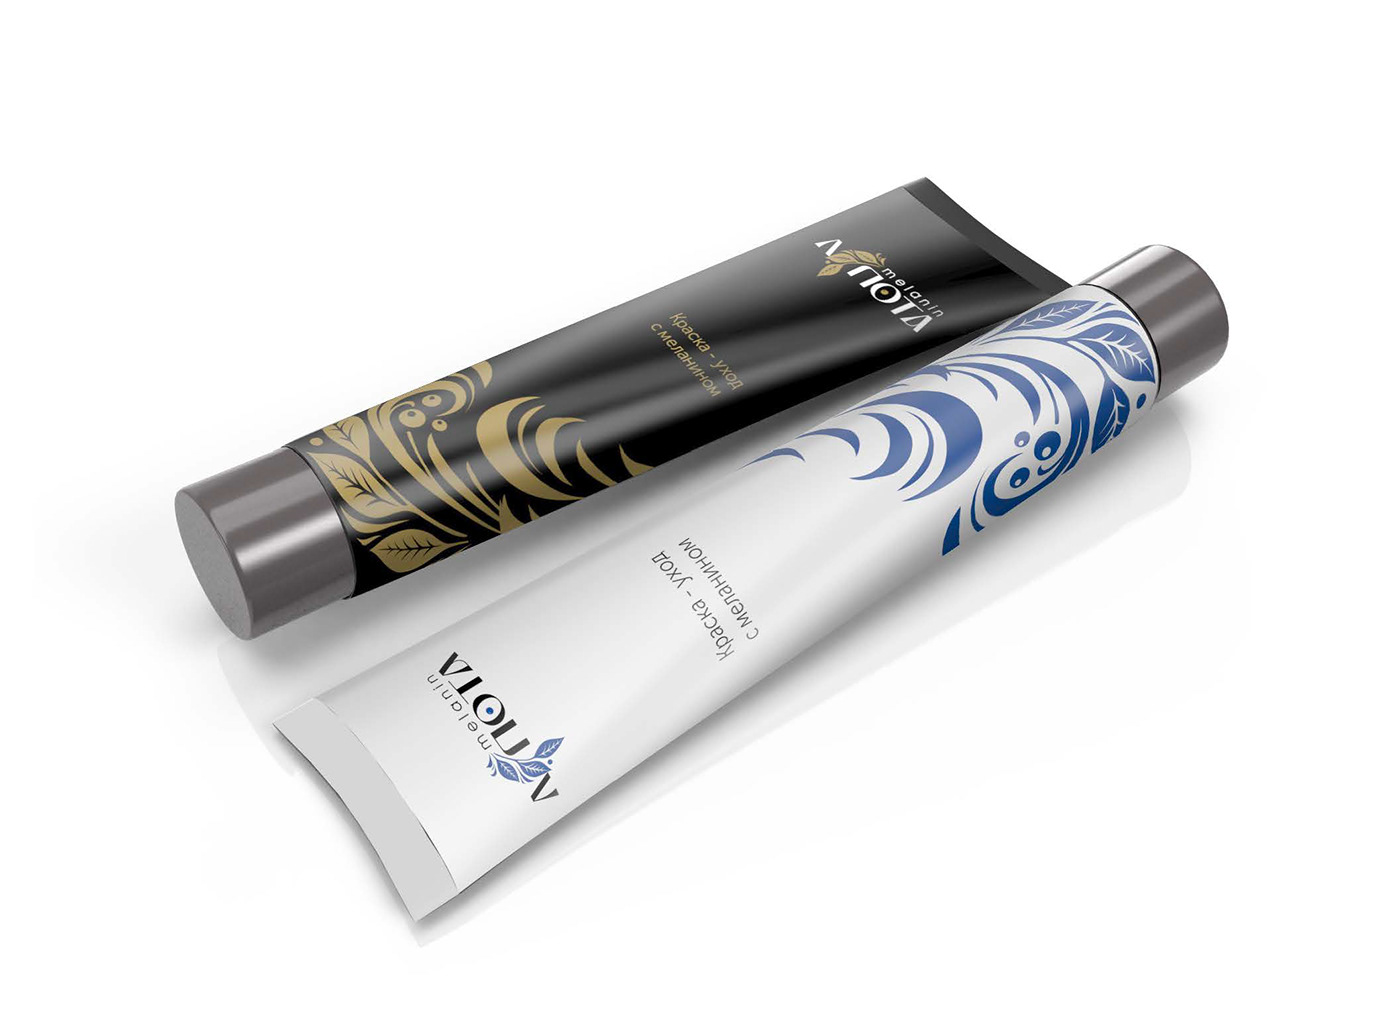 cosmetics Packaging дизайнкосметики для волос краска для волос логотип русский стиль упаковка фирменный стиль хохлома  